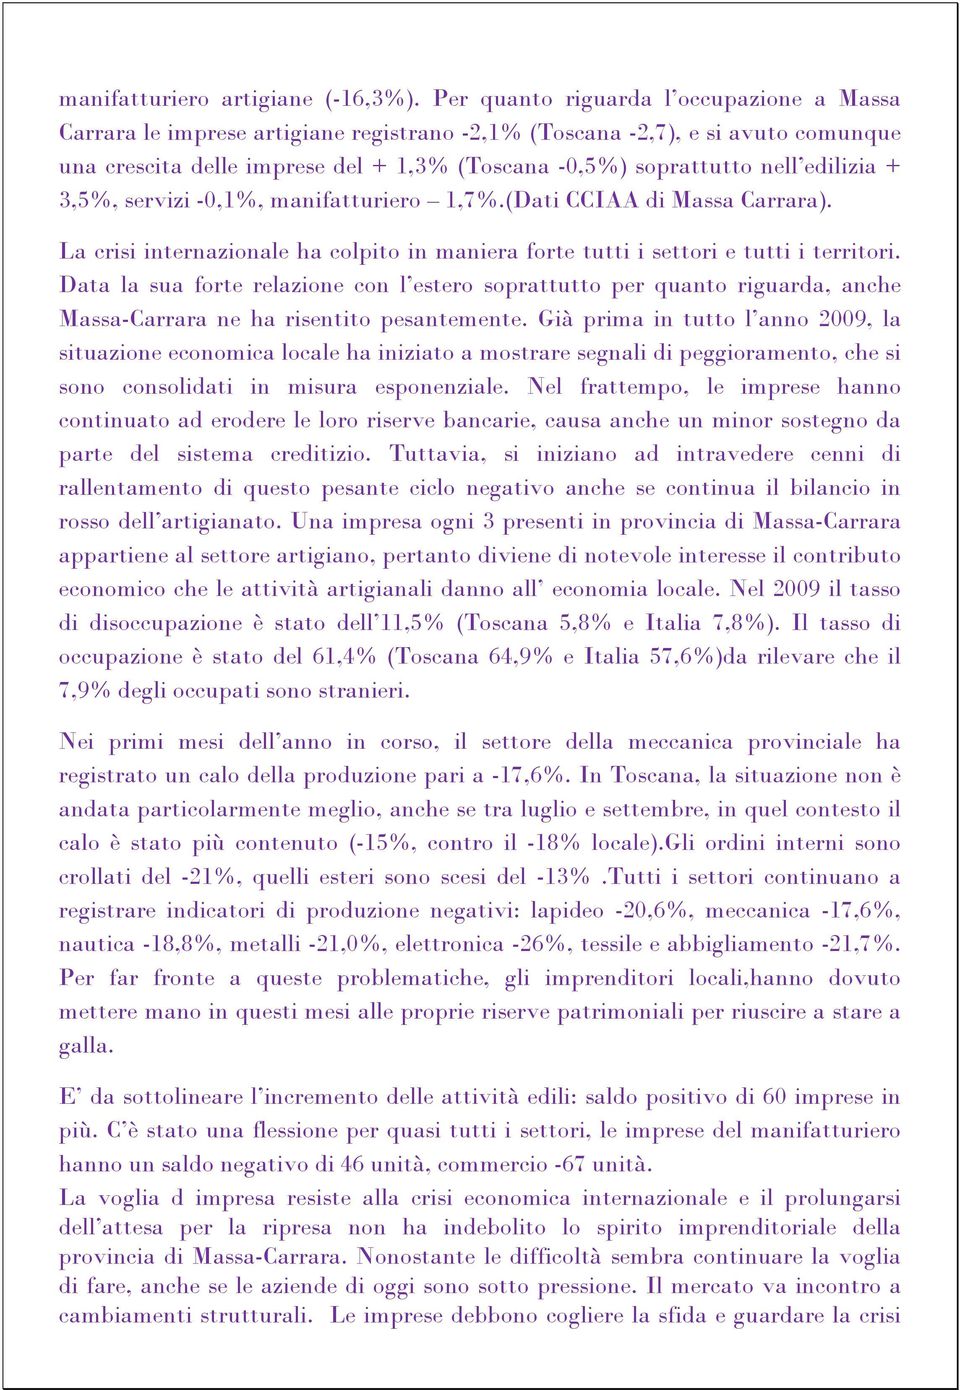 edilizia + 3,5%, servizi -0,1%, manifatturiero 1,7%.(Dati CCIAA di Massa Carrara). La crisi internazionale ha colpito in maniera forte tutti i settori e tutti i territori.